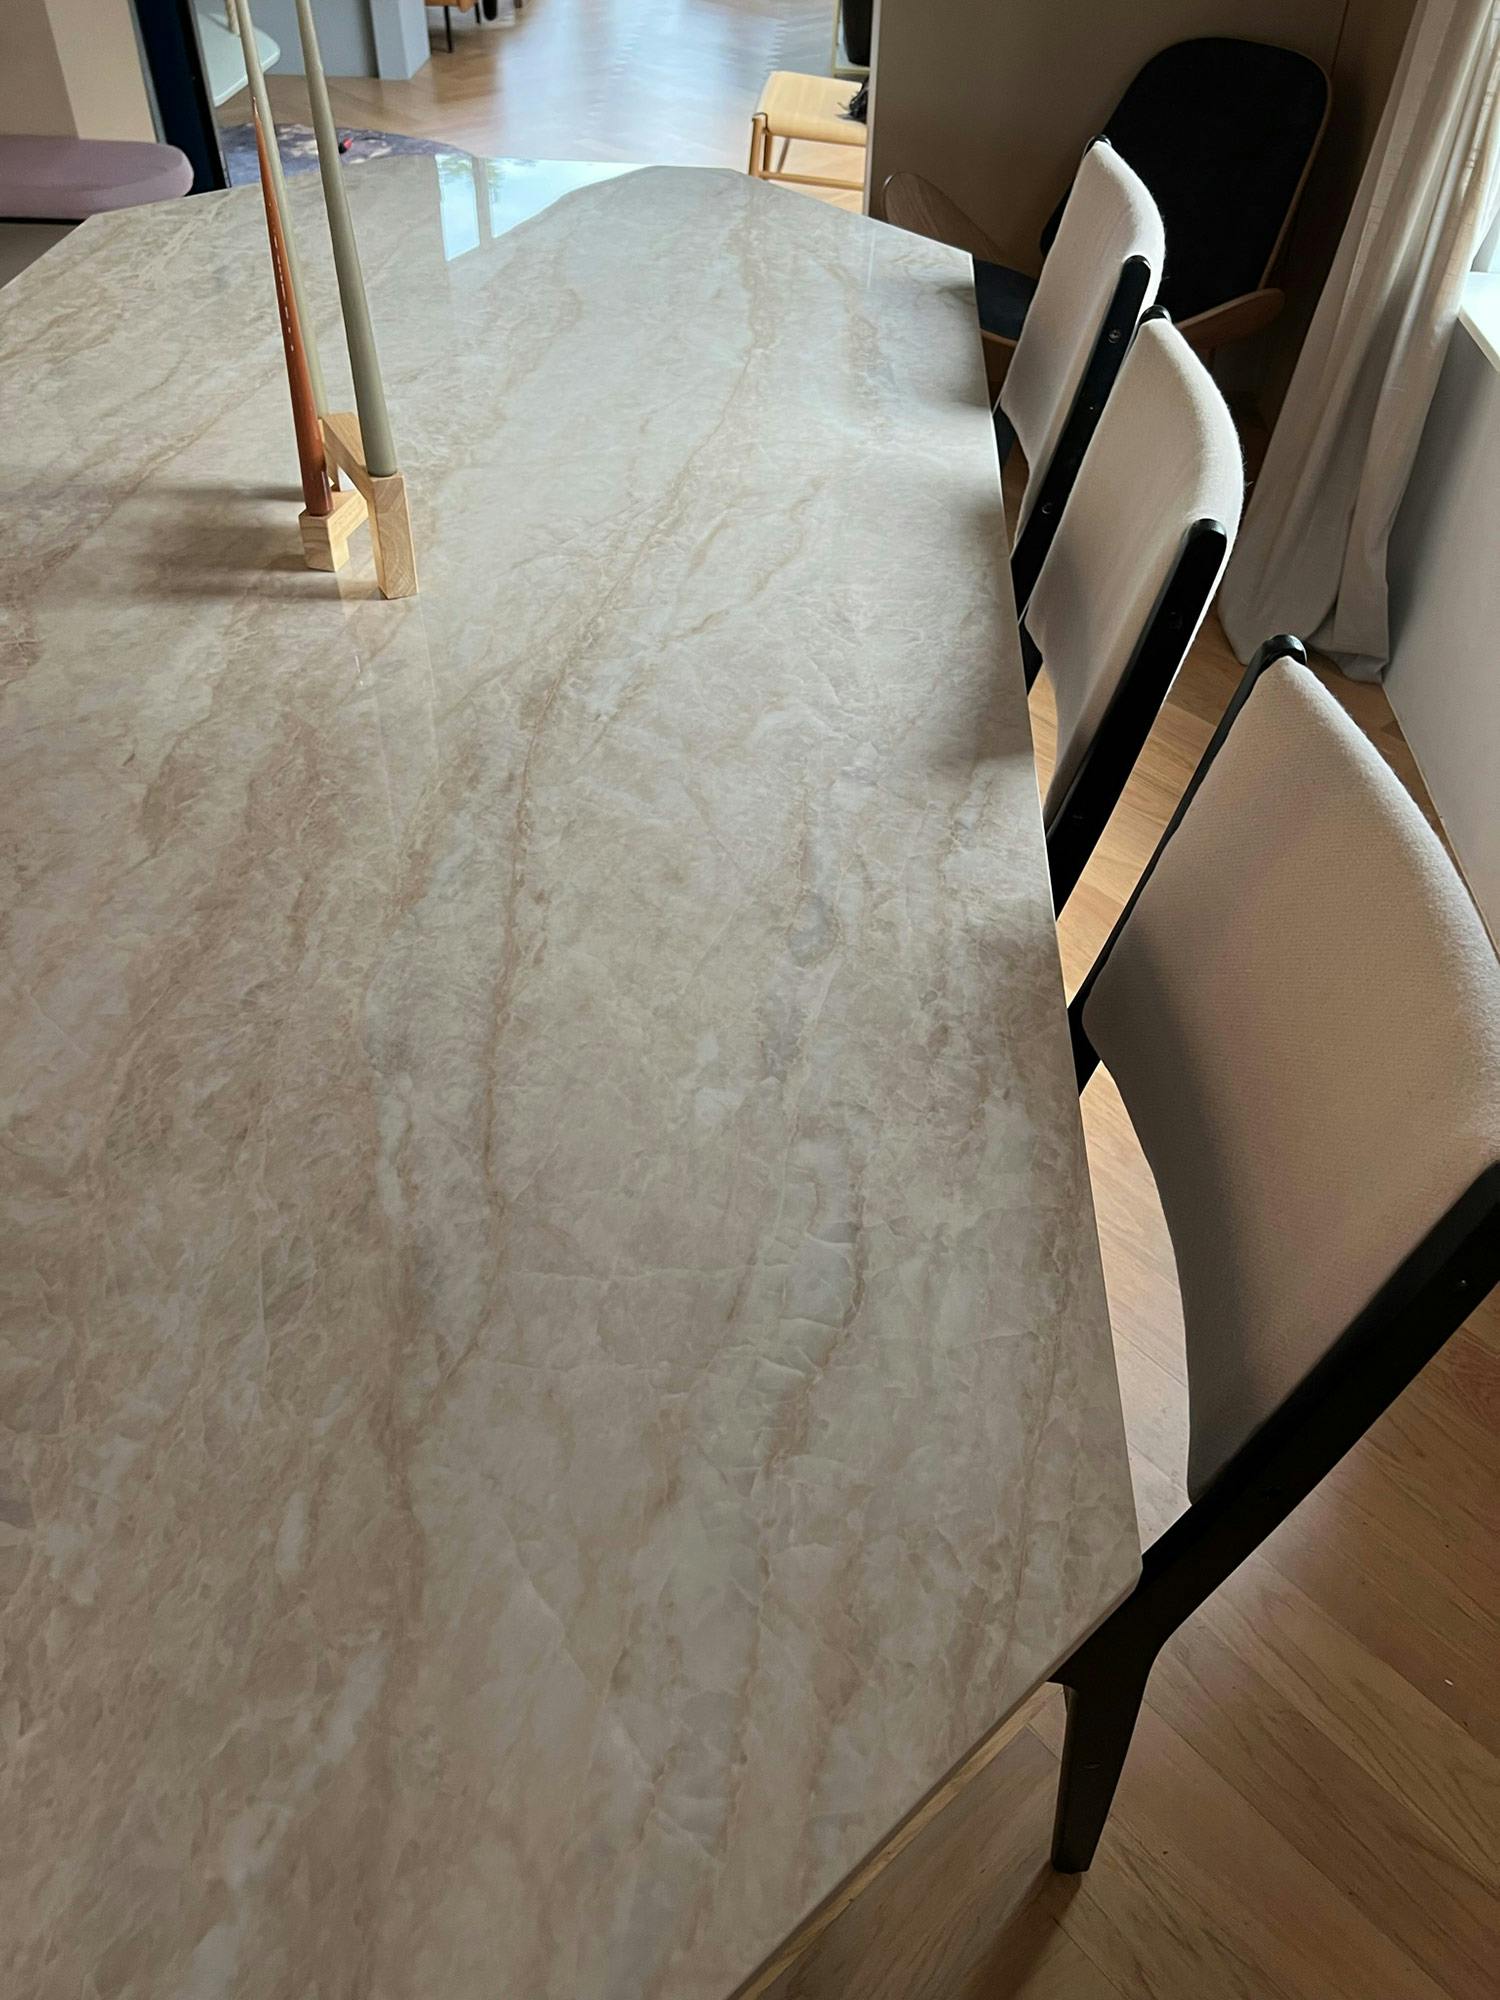 Imagem número 35 da actual secção de An ordinary second-hand table becomes an eye-catching and elegant piece of furniture thanks to Dekton da Cosentino Portugal